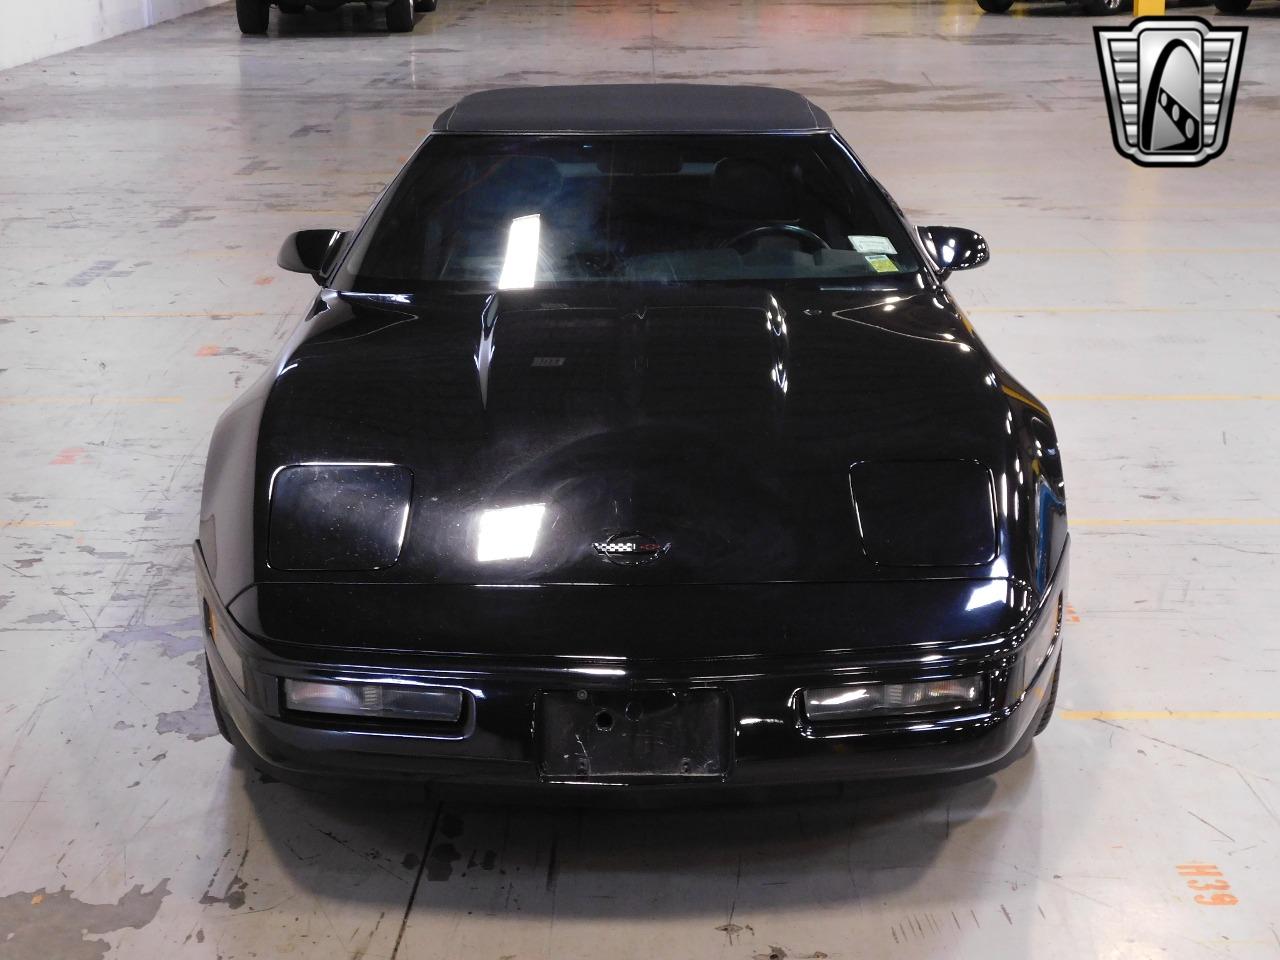 1993 Chevrolet Corvette